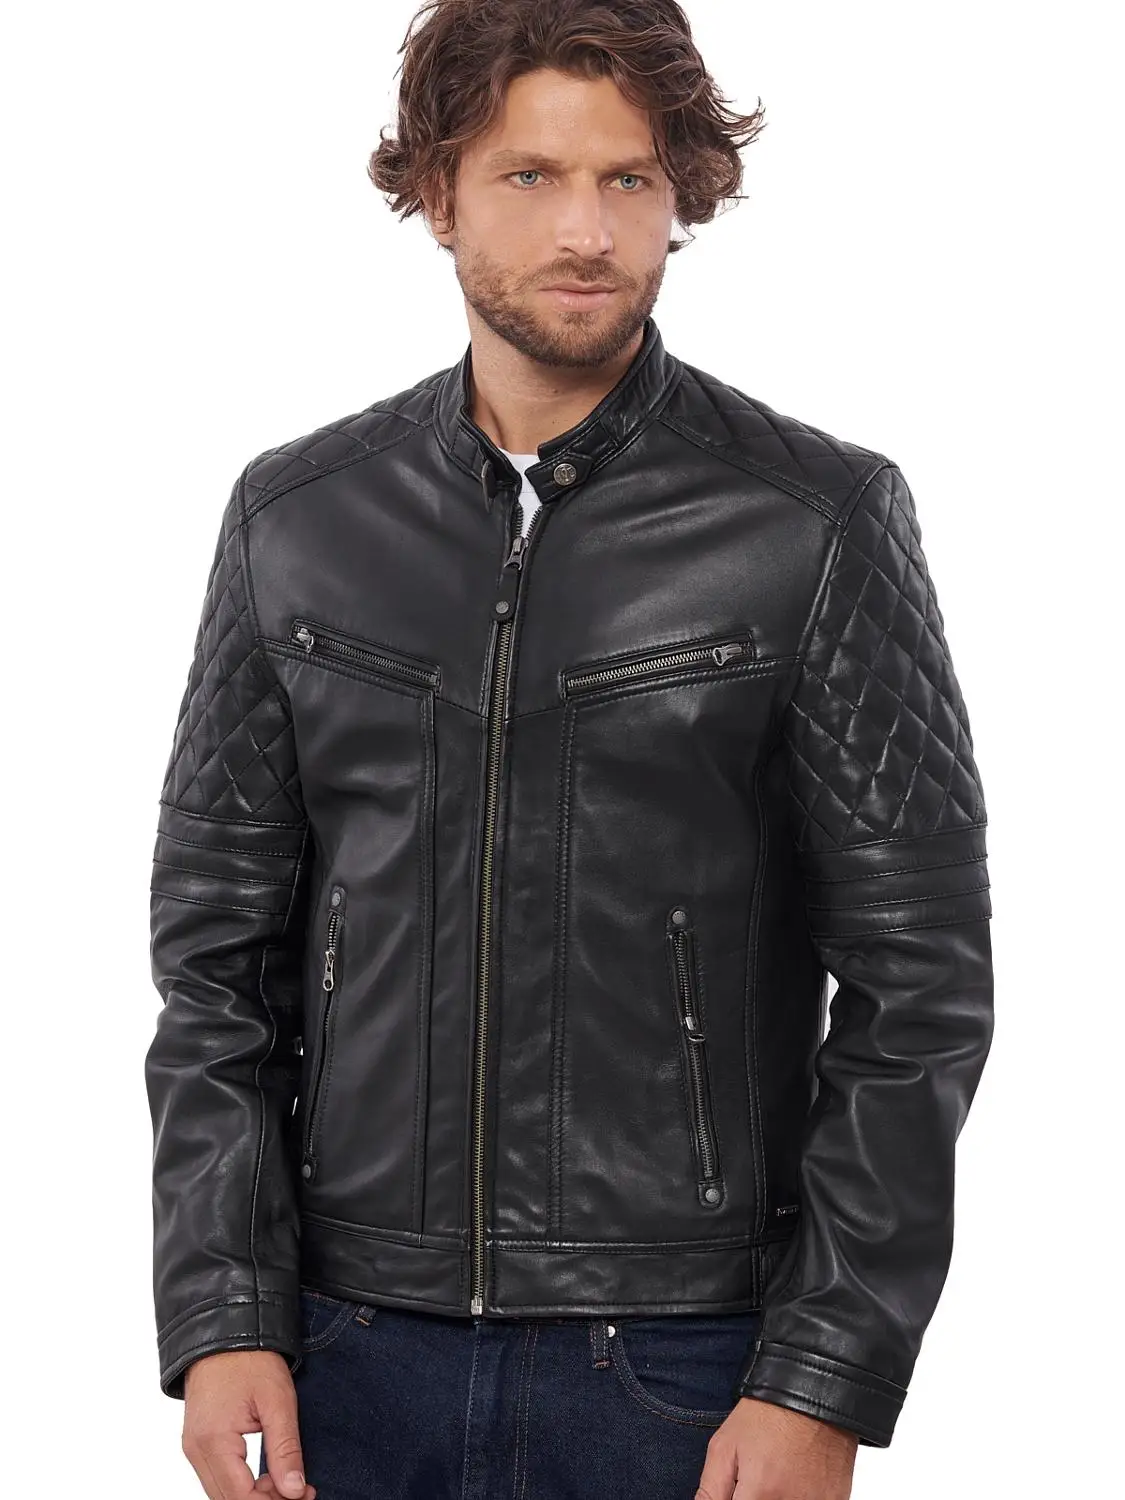 VAINAS, европейский бренд, мужская куртка премиум класса из буйвола, кожаная мужская зимняя мотоциклетная куртка из натуральной кожи, байкерские куртки Bravo